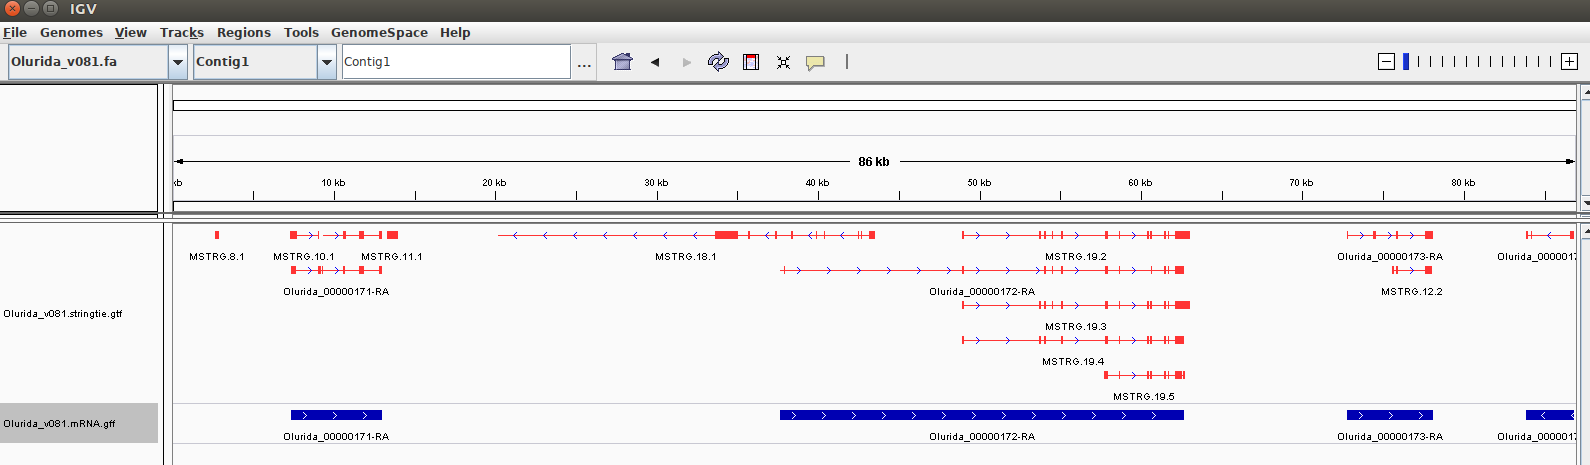 IGV screencap showing Strintie isoforms